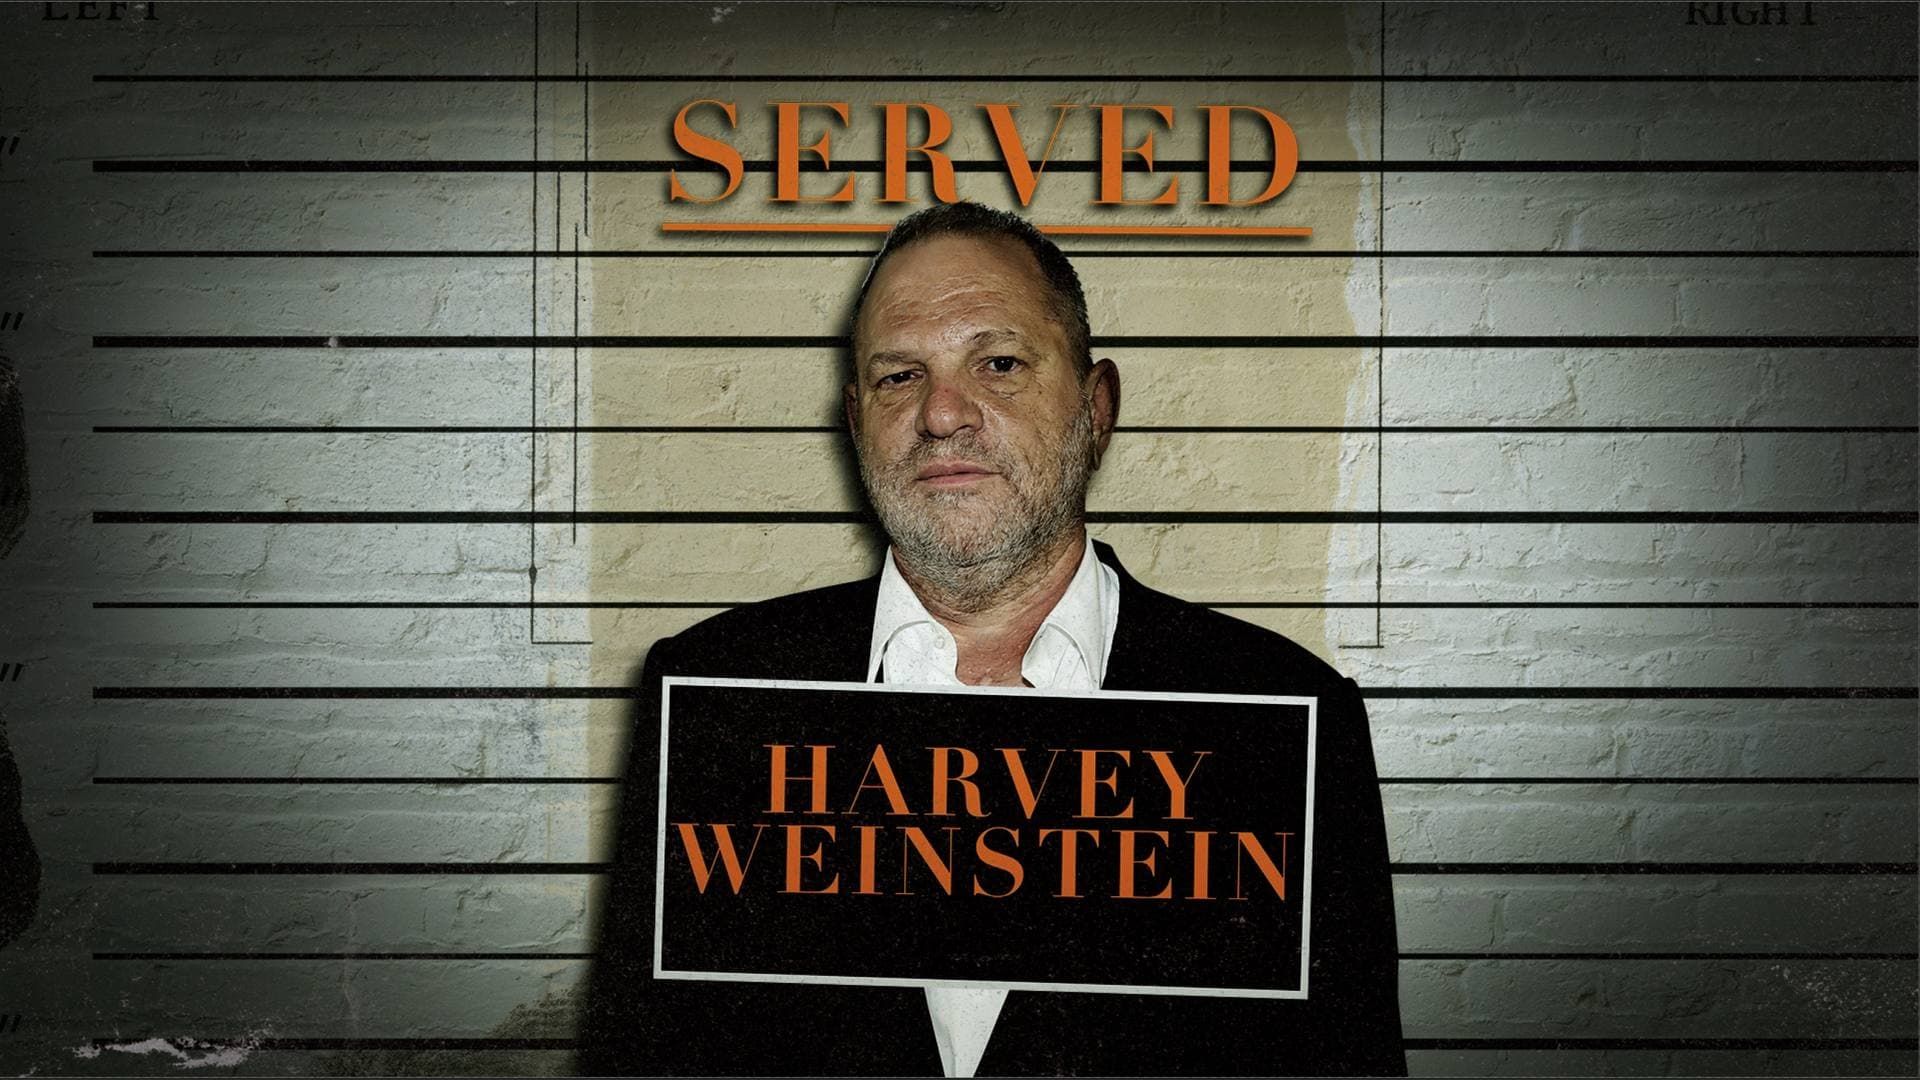 Served: Harvey Weinstein background